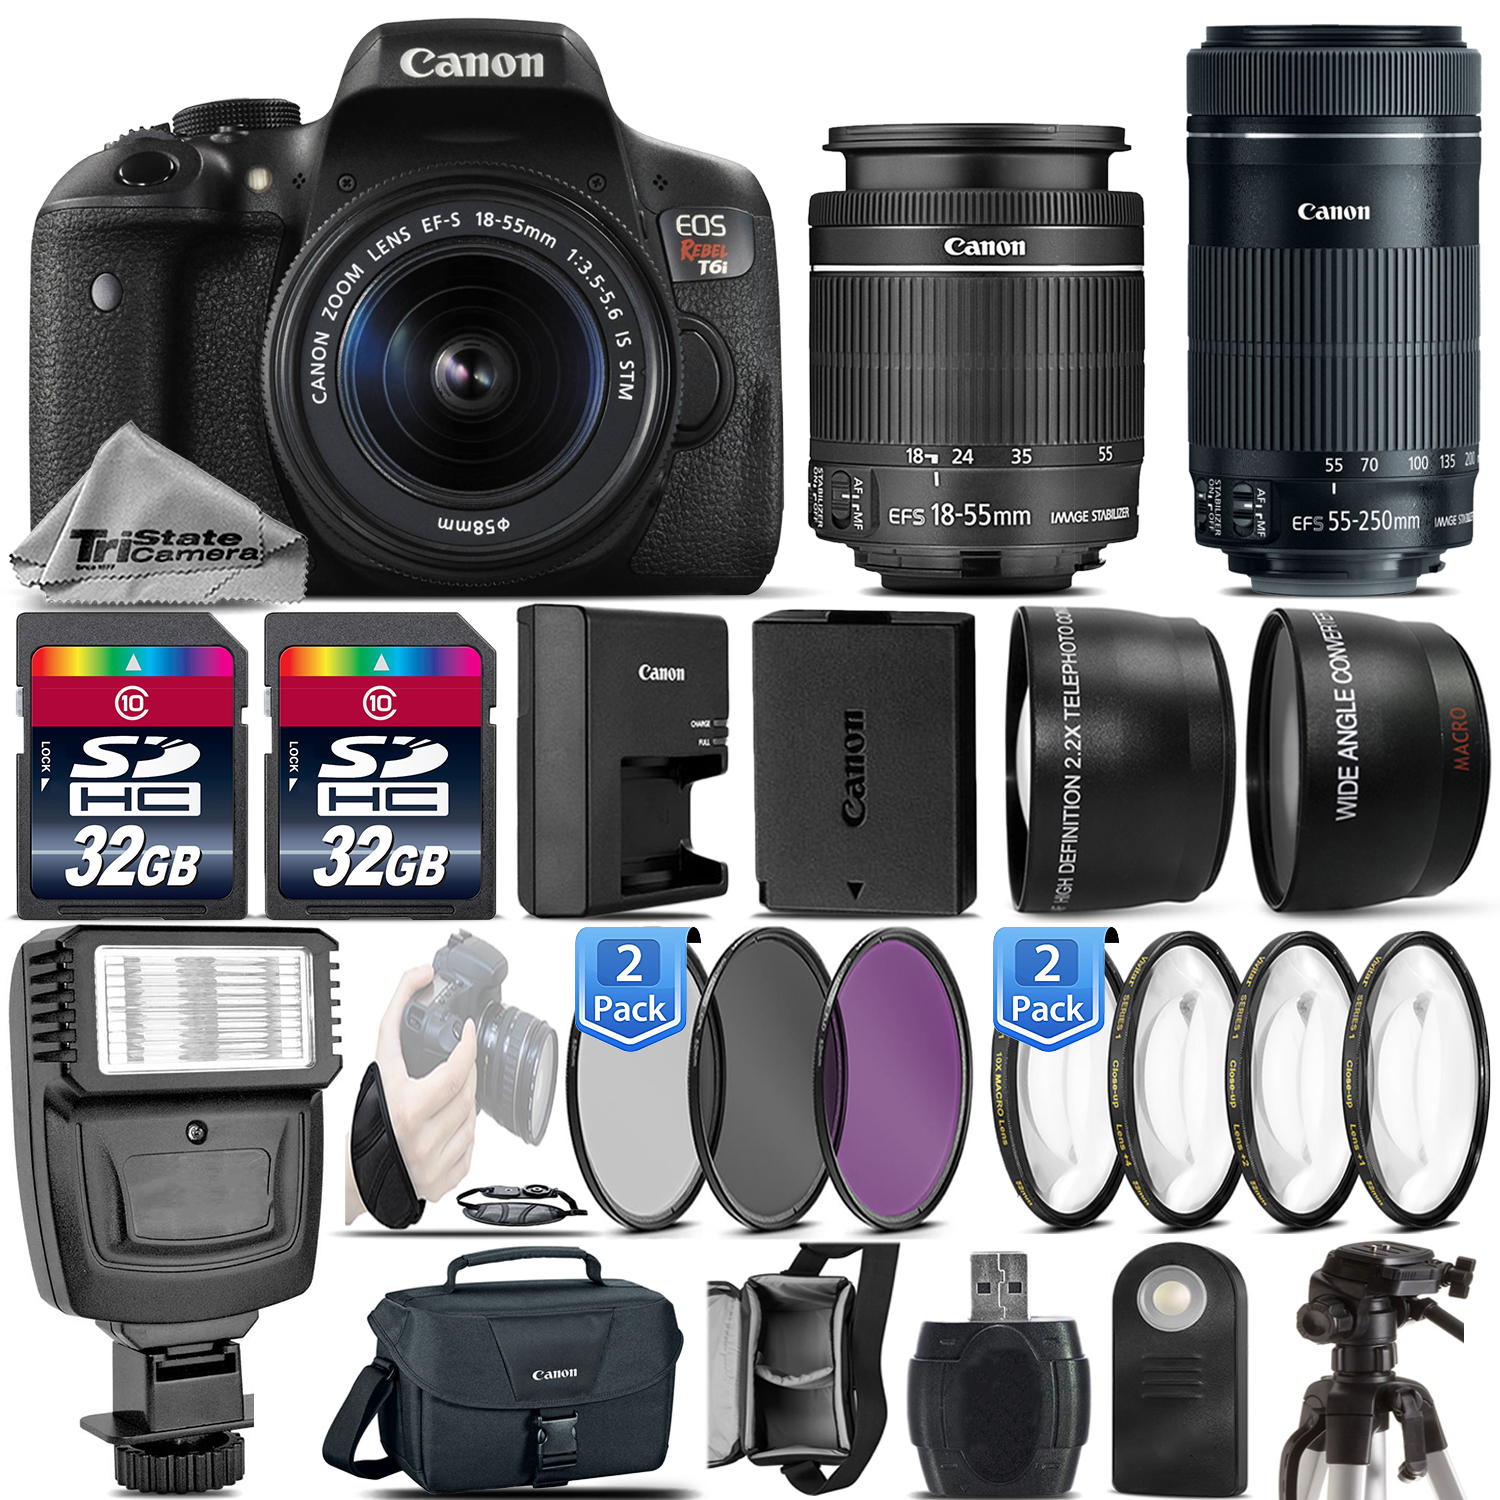 EOS Rebel T6i / 750D Camera + 18-55mm STM + 55-250mm STM - 64GB Kit Bundle *FREE SHIPPING*